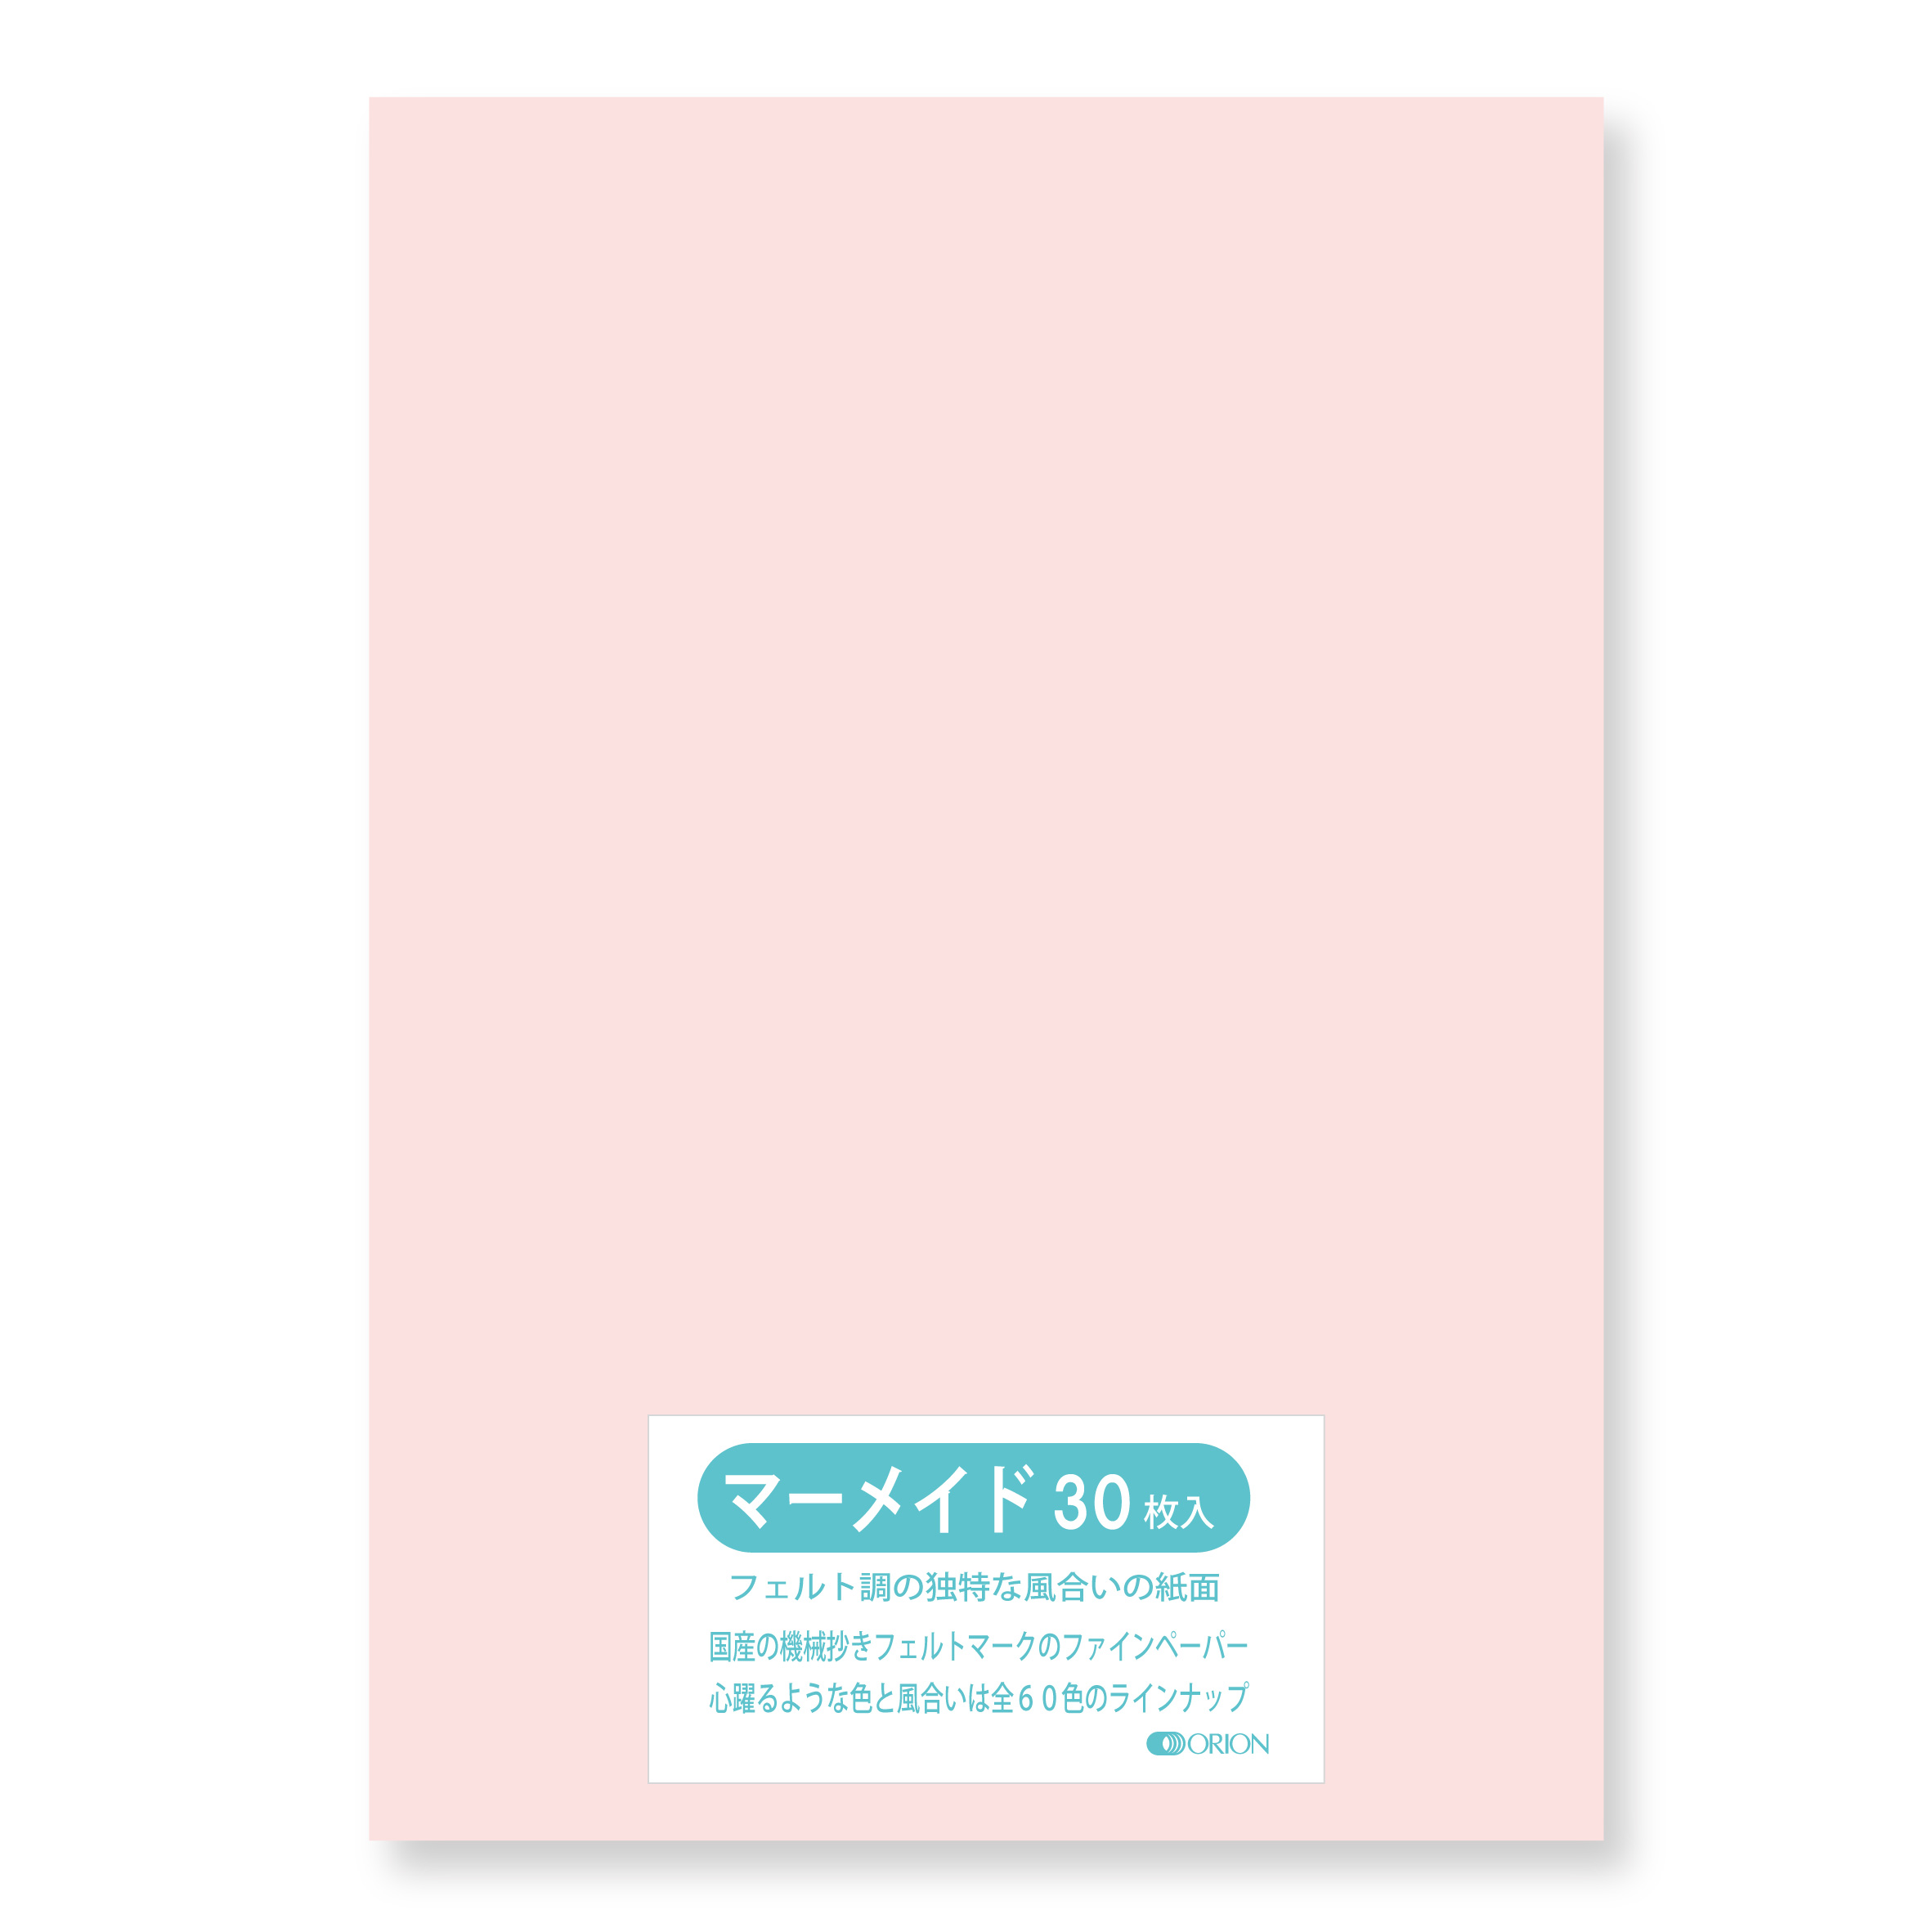 マーメイド紙 日本未発売 153kg 桜 B2サイズ 728 515 30枚入 選べる60色 オリオン